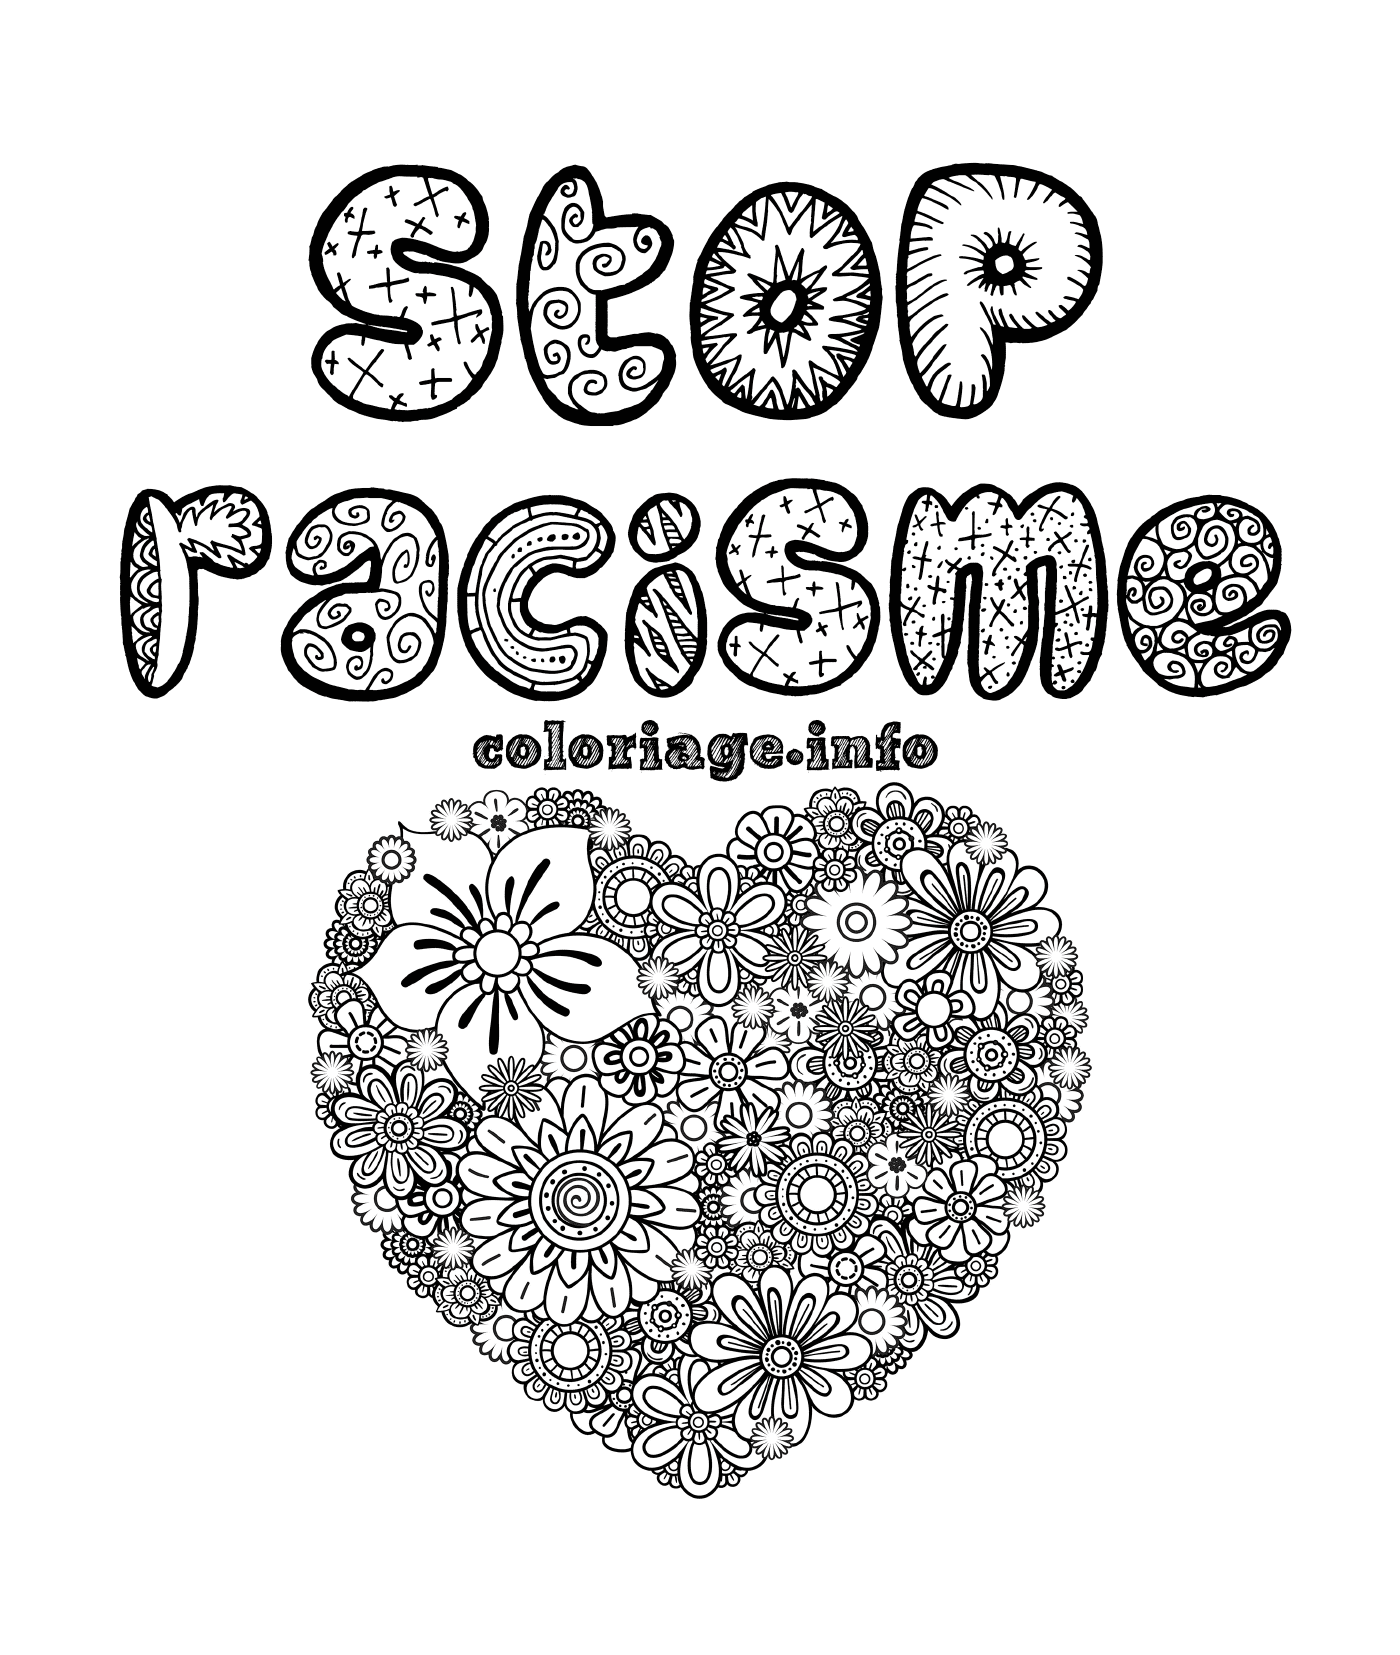  Ferma il razzismo, il cuore del mandala 